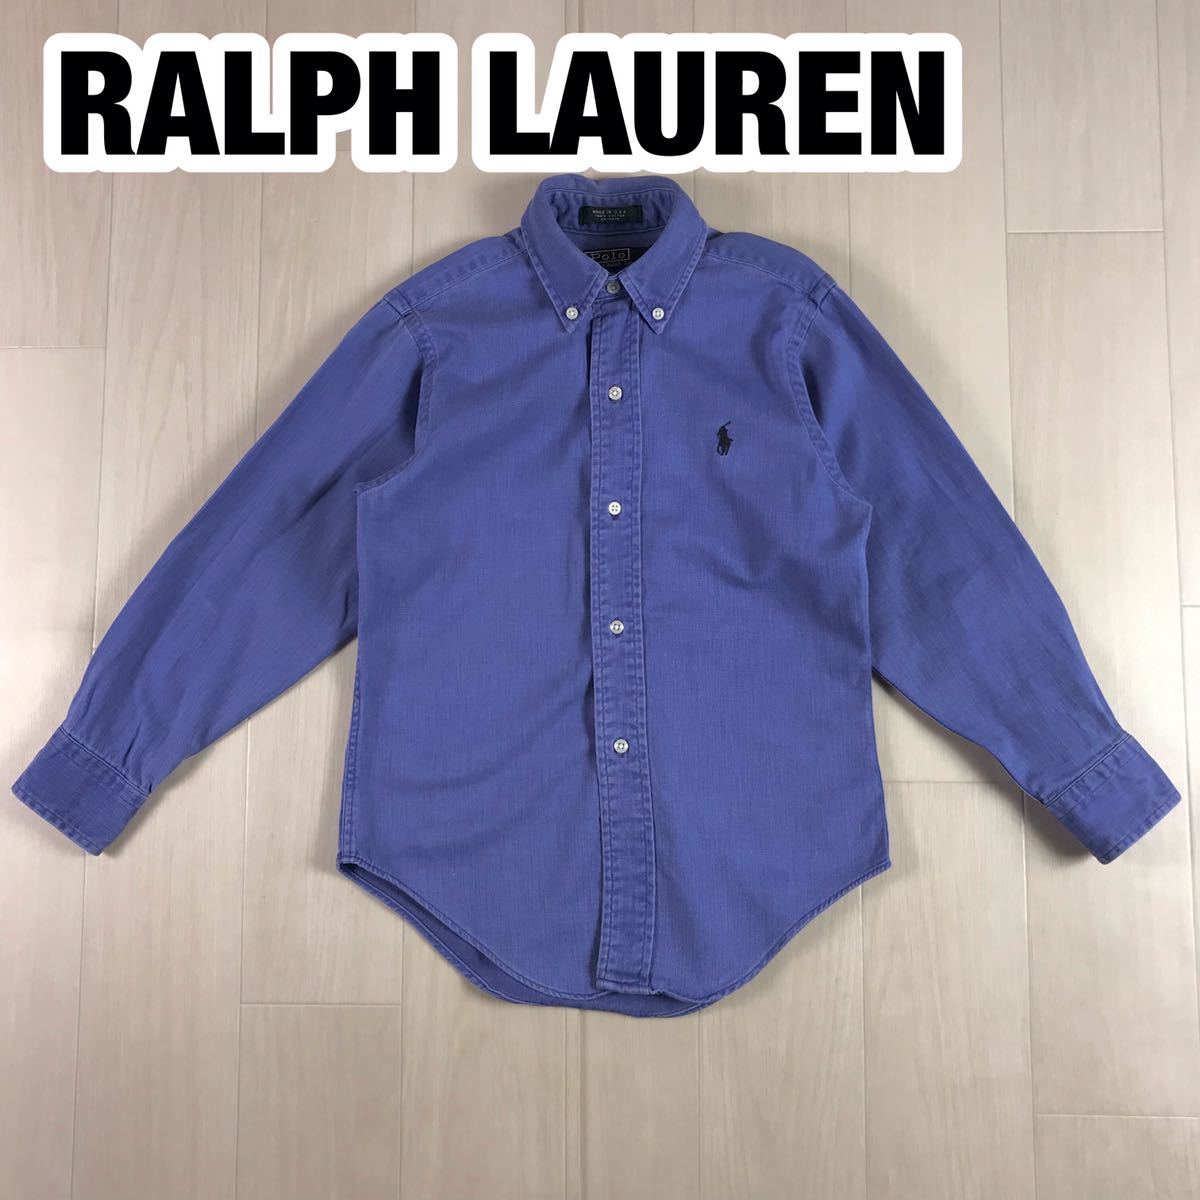 POLO BY RALPH LAUREN ポロ バイ ラルフローレン S ユースサイズ ブルー シャンブレー 刺繍ロゴ ポニー_画像1